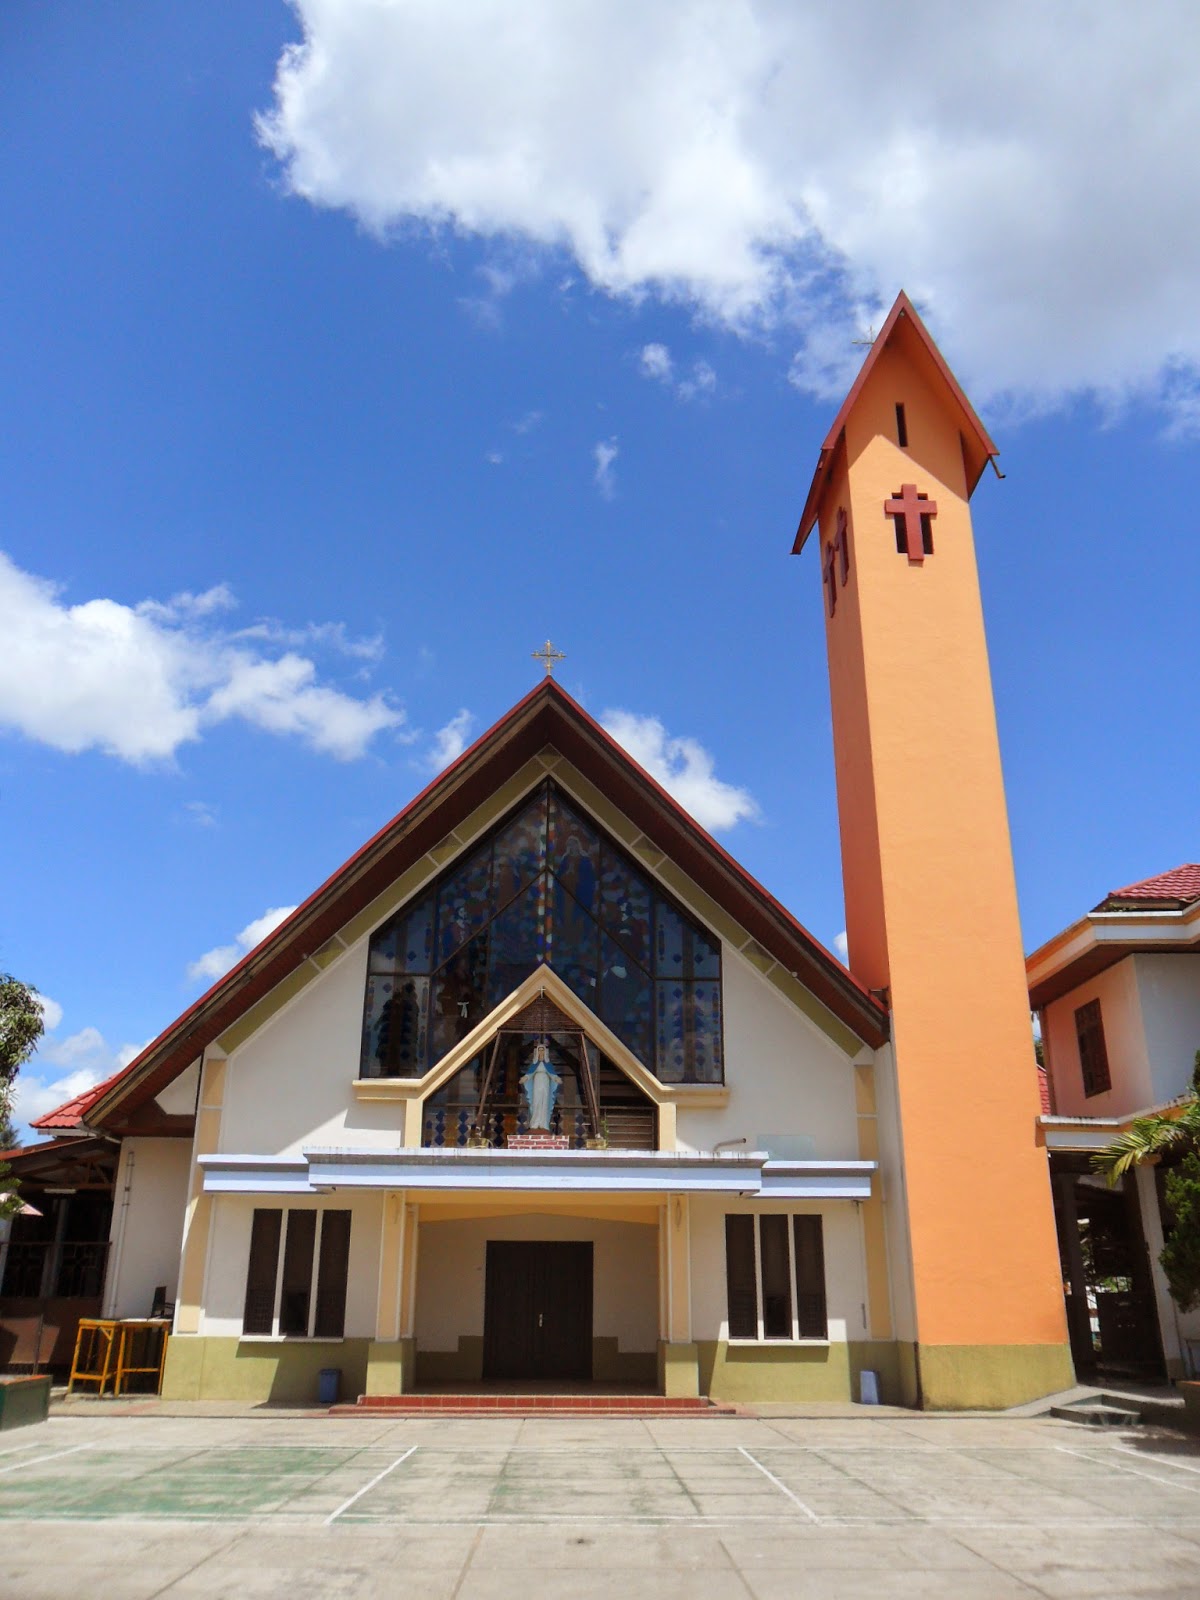 : Wisata Religi atau Tempat Ibadah yang Terkenal di Kota Samarinda